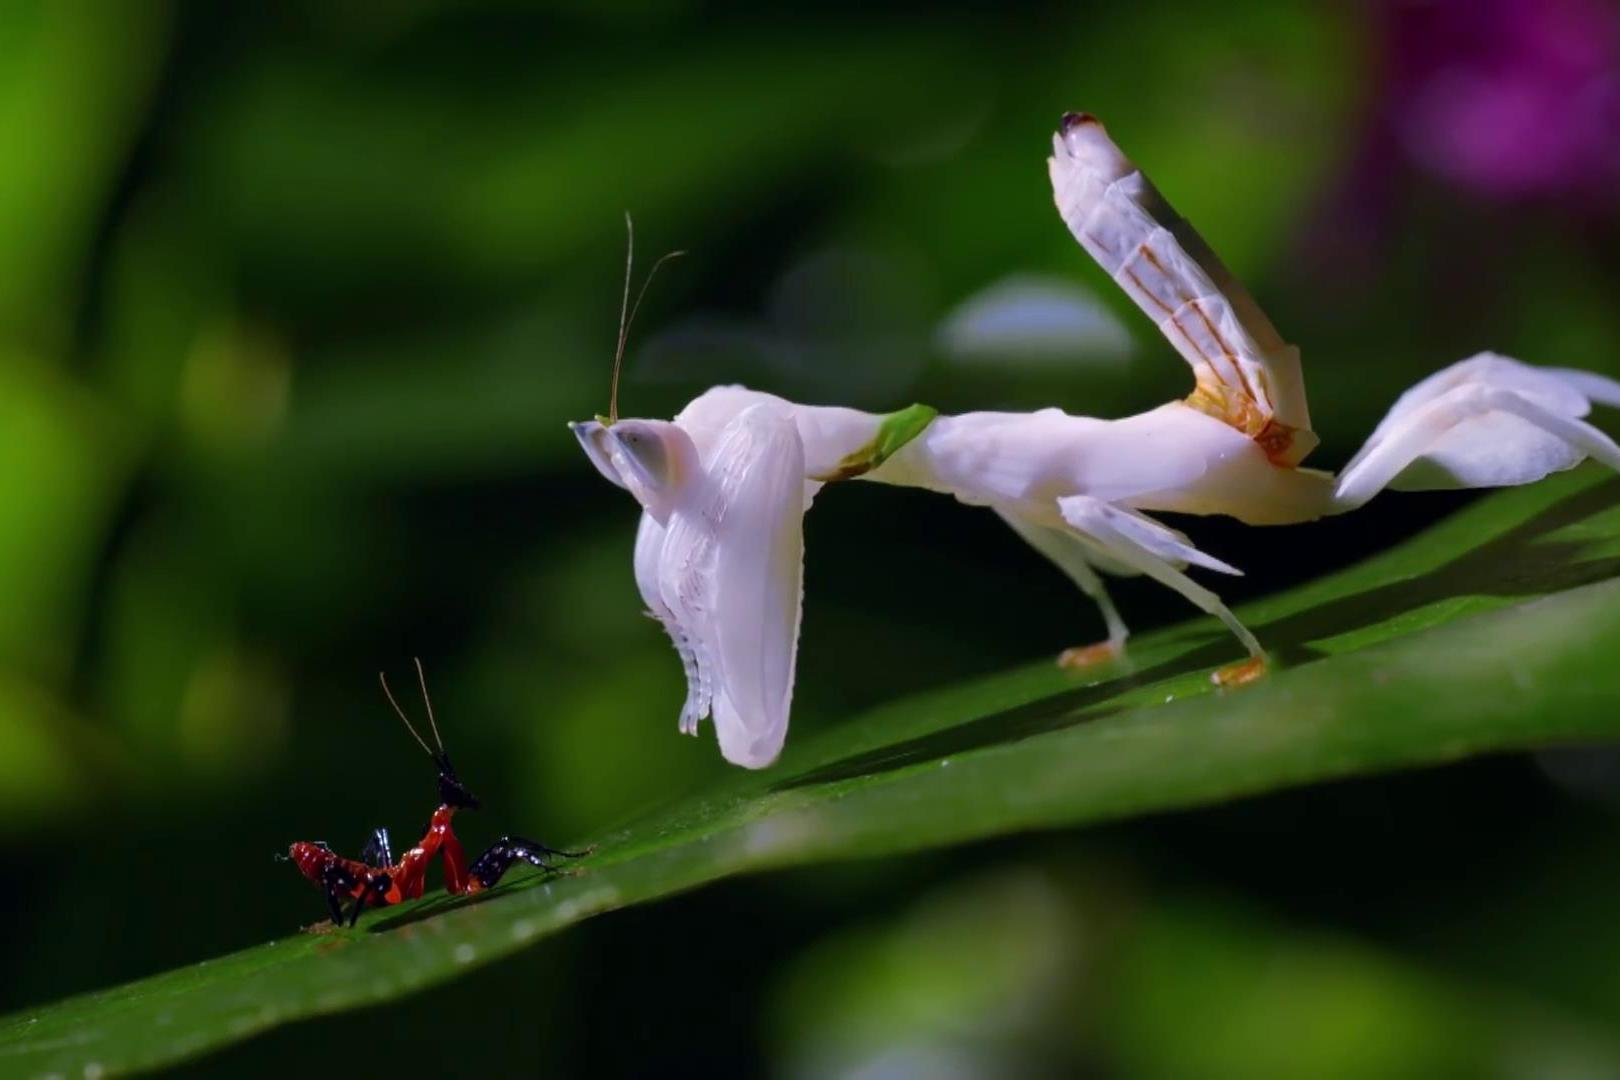 罕见白色螳螂近距离观察昆虫的世界斗智斗勇的丛林法则